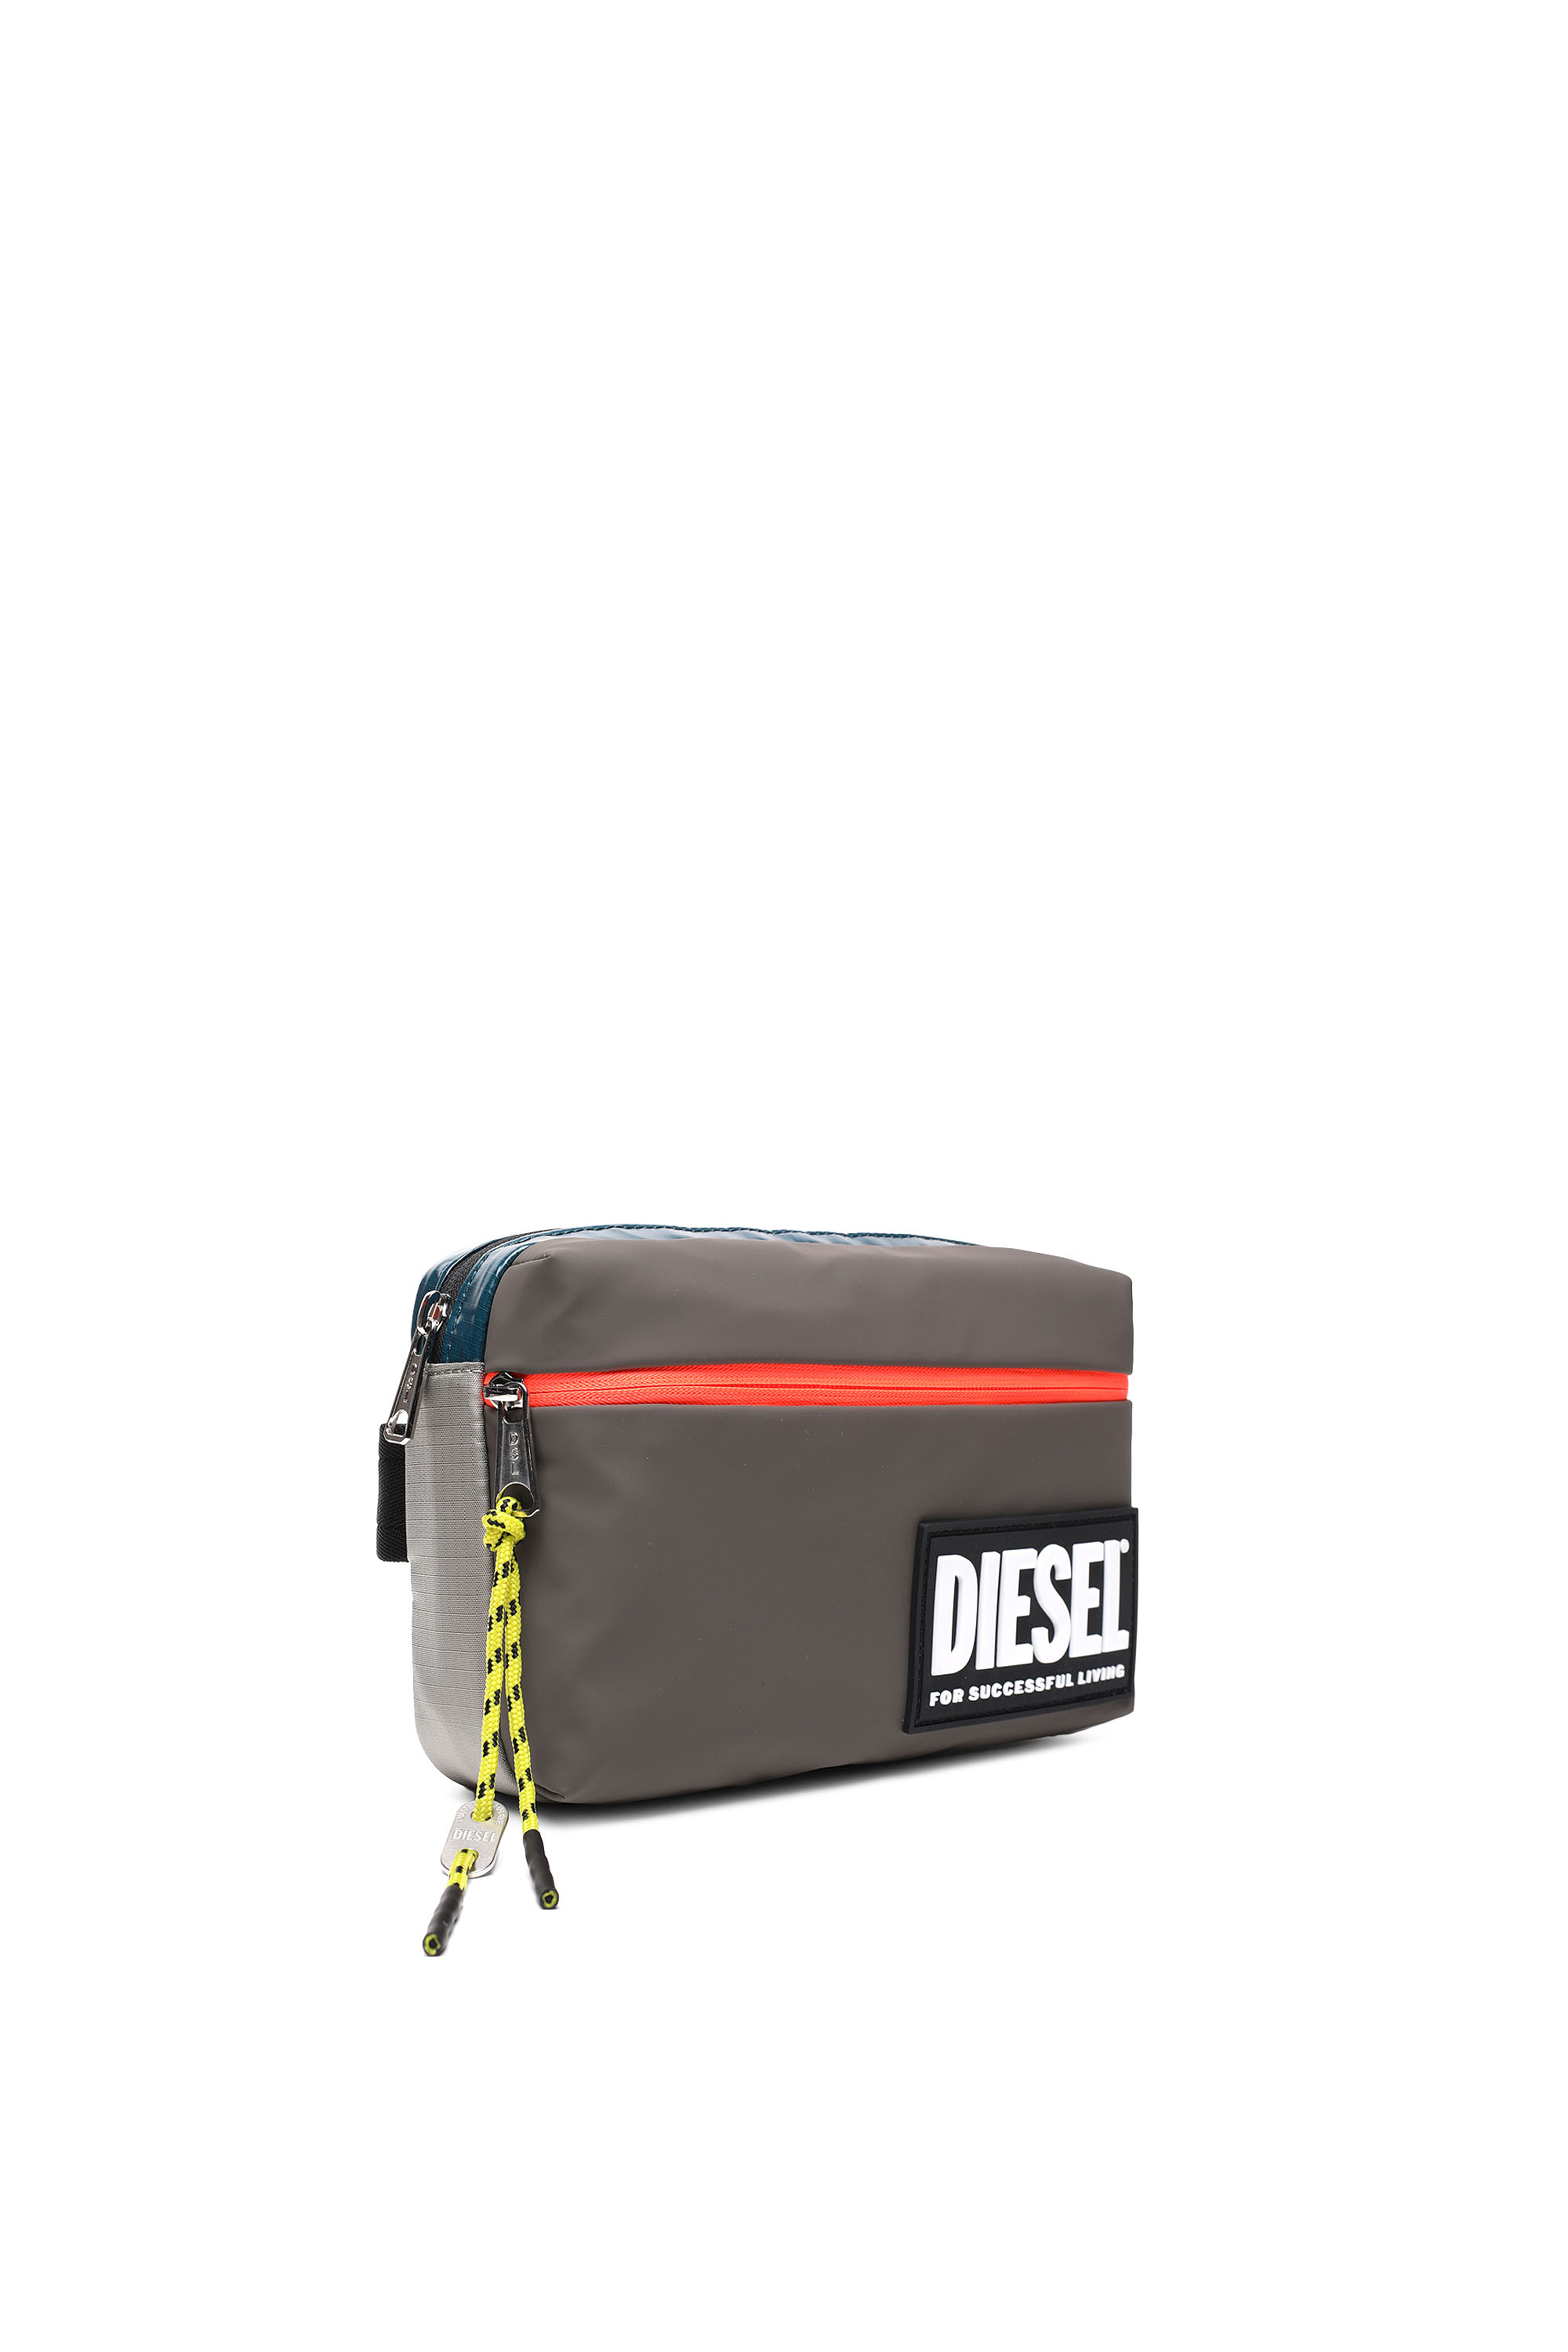 Diesel - BELTYO, Brown - Image 5